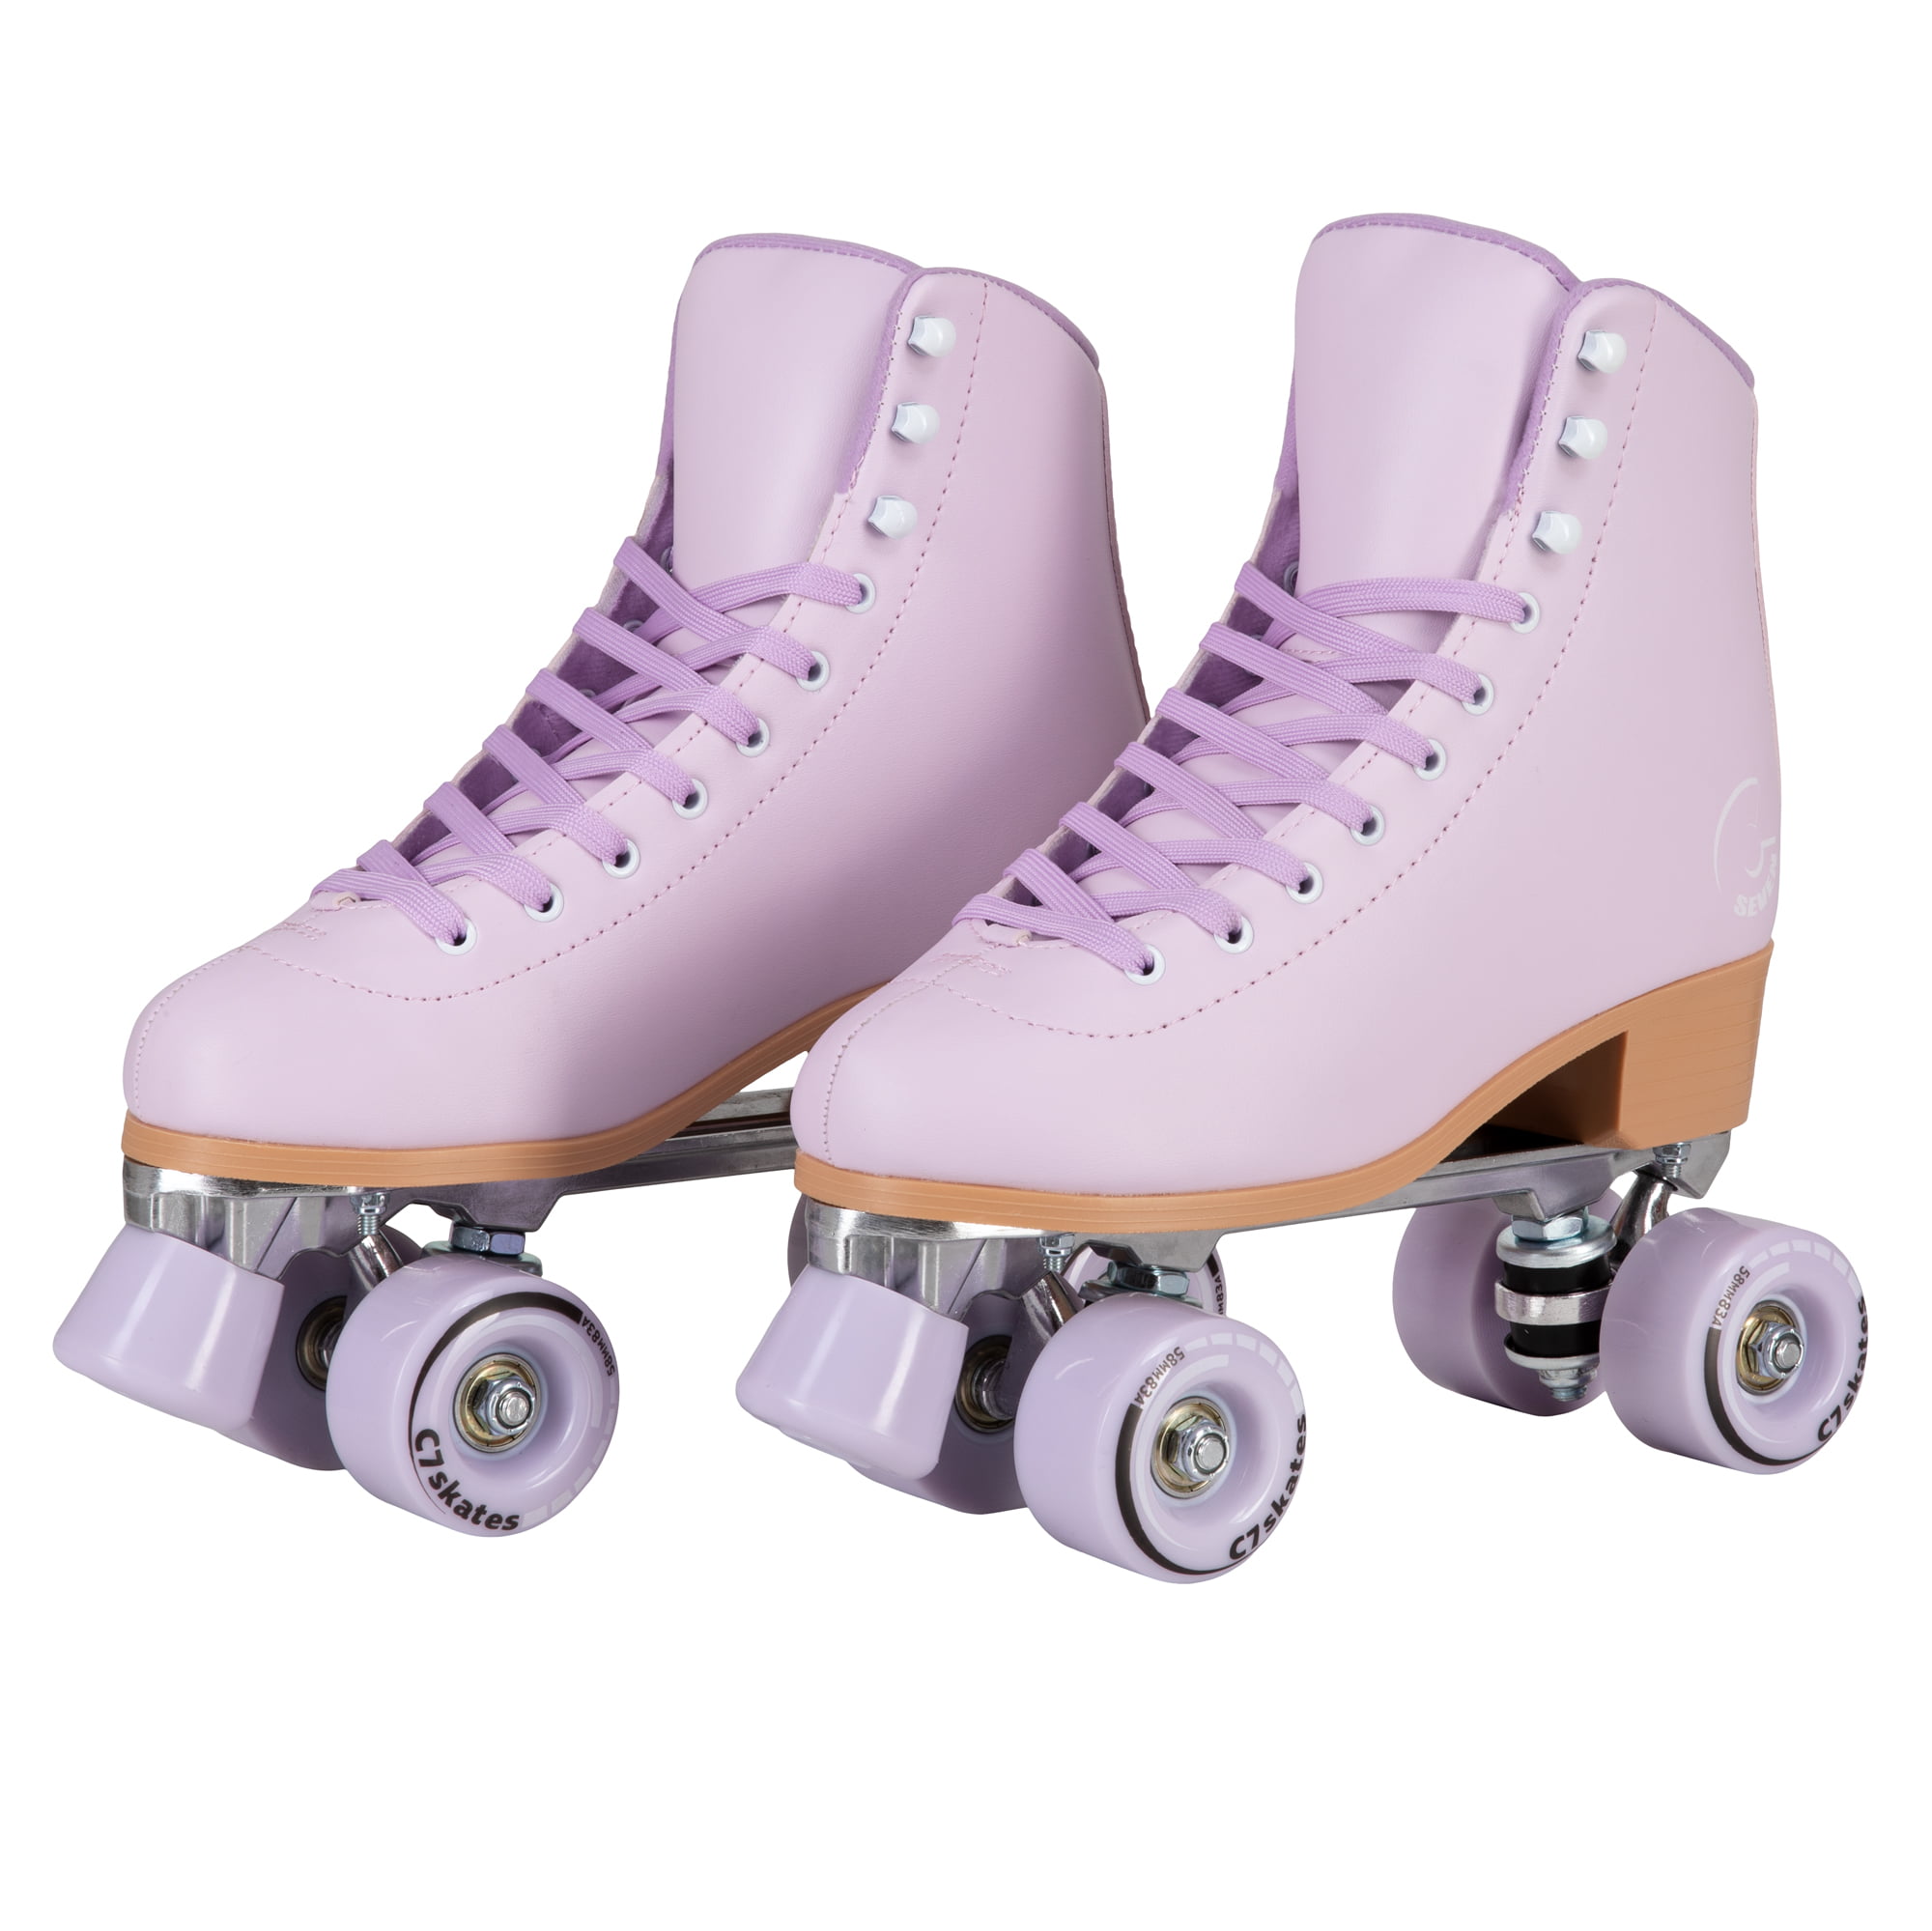 Details about   *Best New Inline Skates for Men Women Size 7 8 9 10 11 Roller Blades Adjustable 